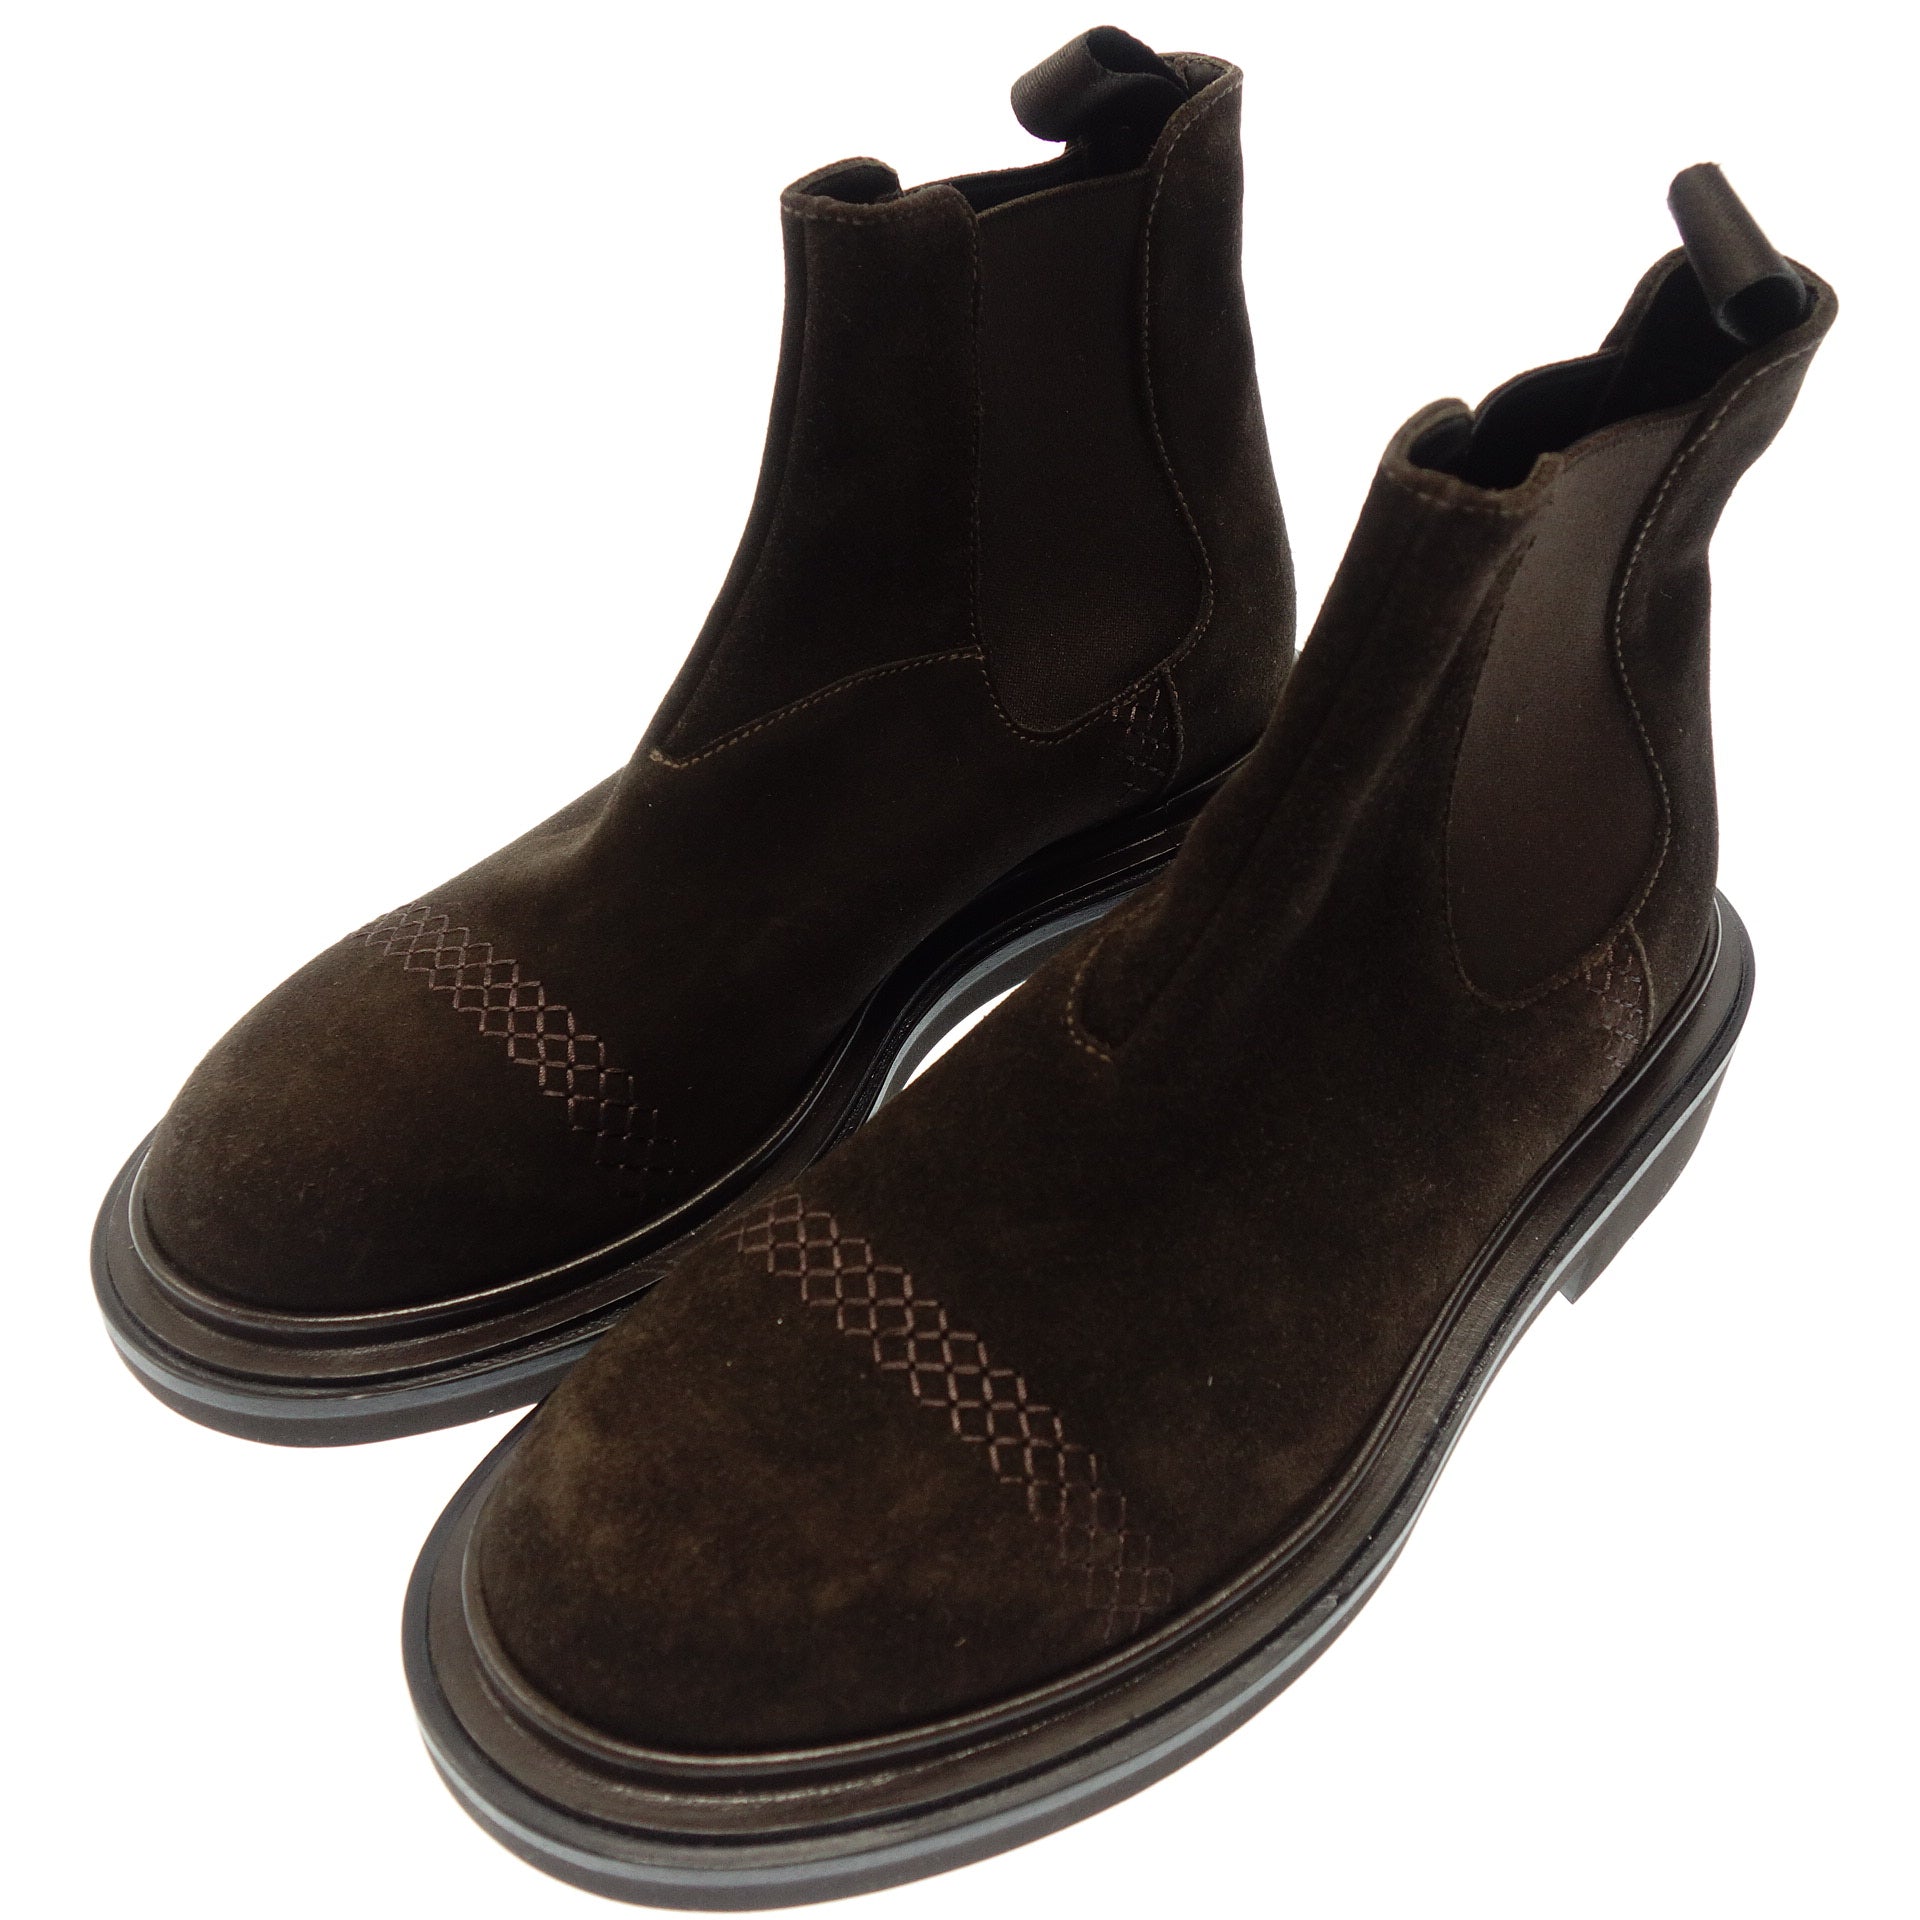 ブーツアルマーニ／GIORGIO ARMANI ワークブーツ シューズ 靴 メンズ 男性 男性用レザー 革 本革 ブラック 黒  225 GU Uチップ Vibramソール